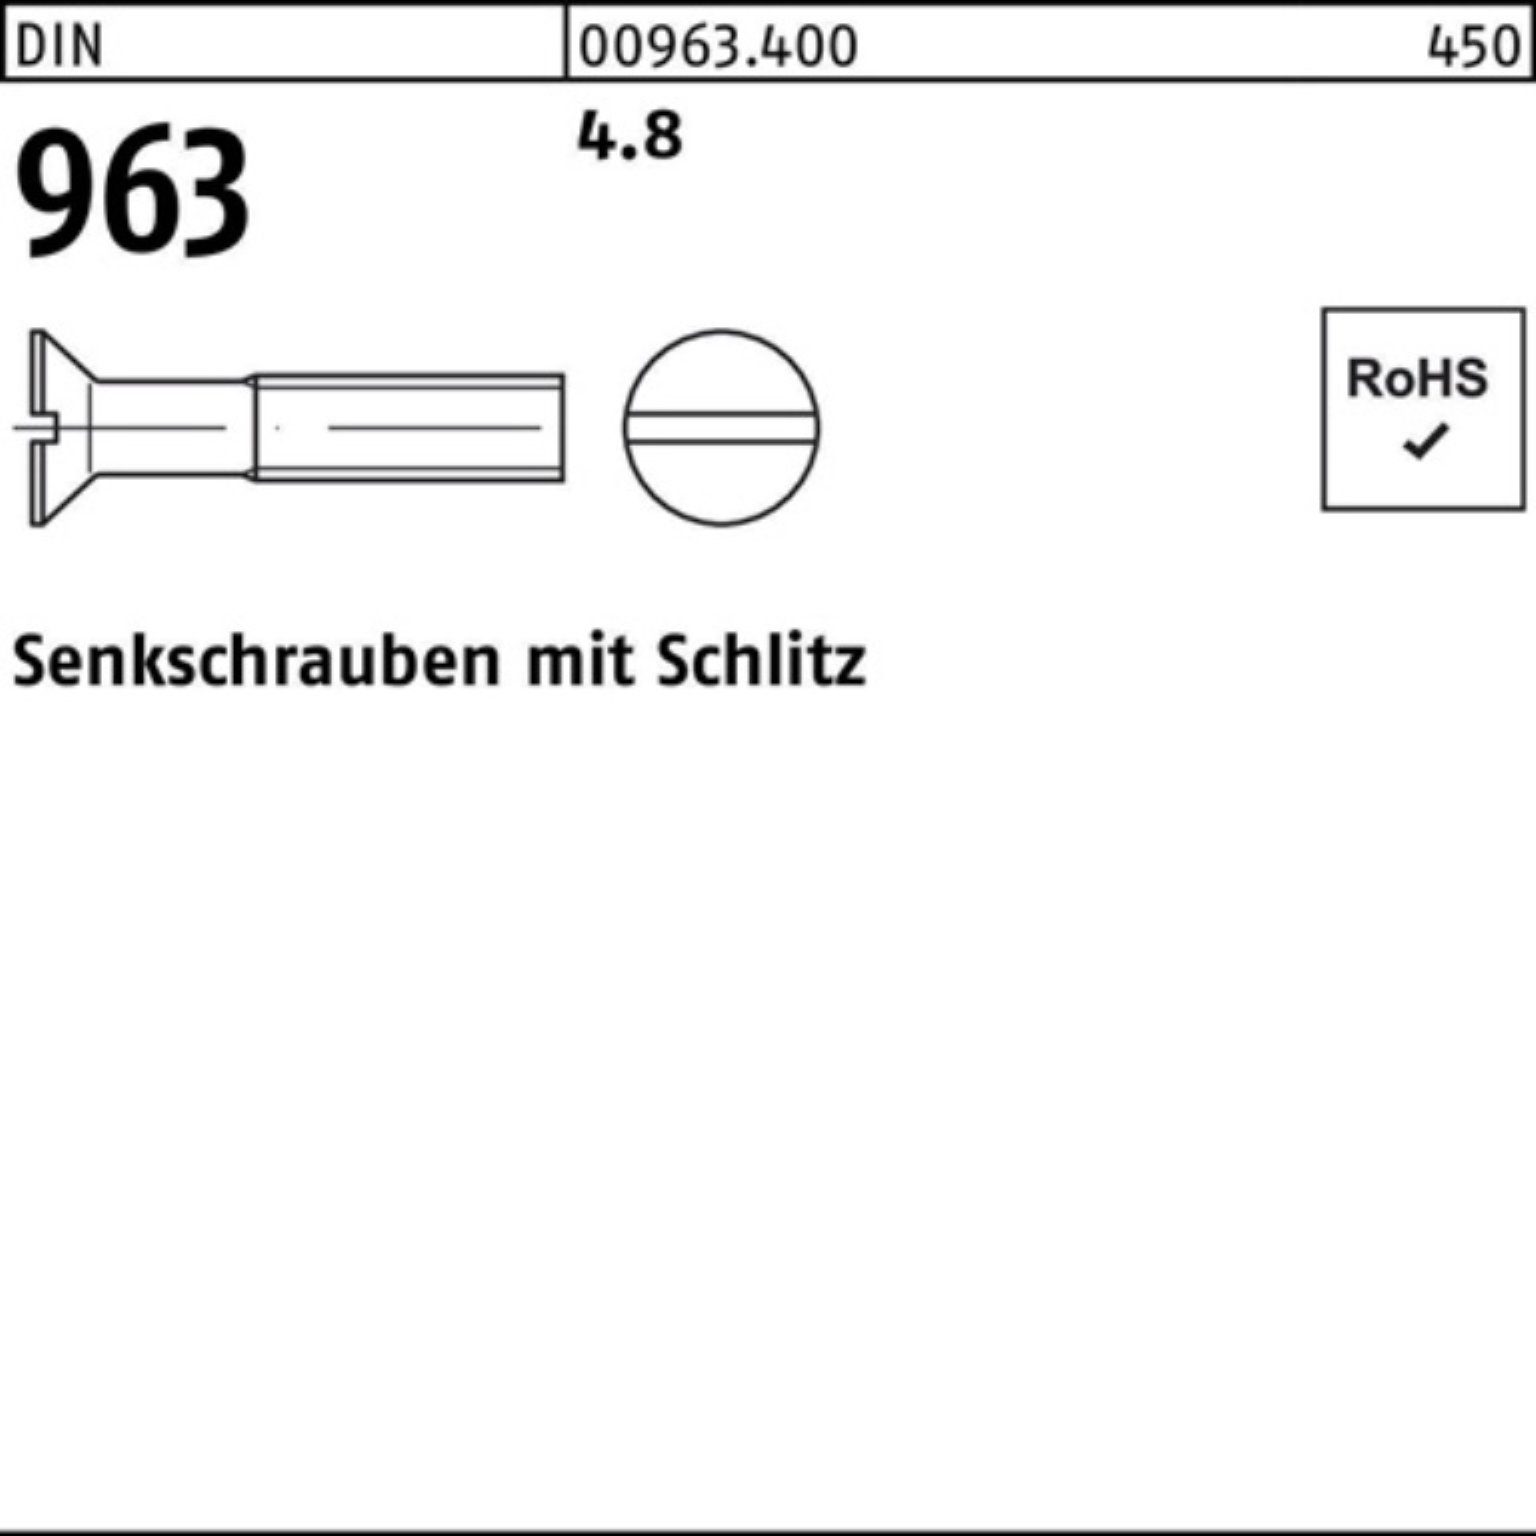 M5x Reyher Senkschraube Senkschraube DIN DIN 4.8 40 963 963 Stück Pack 500 500er Schlitz